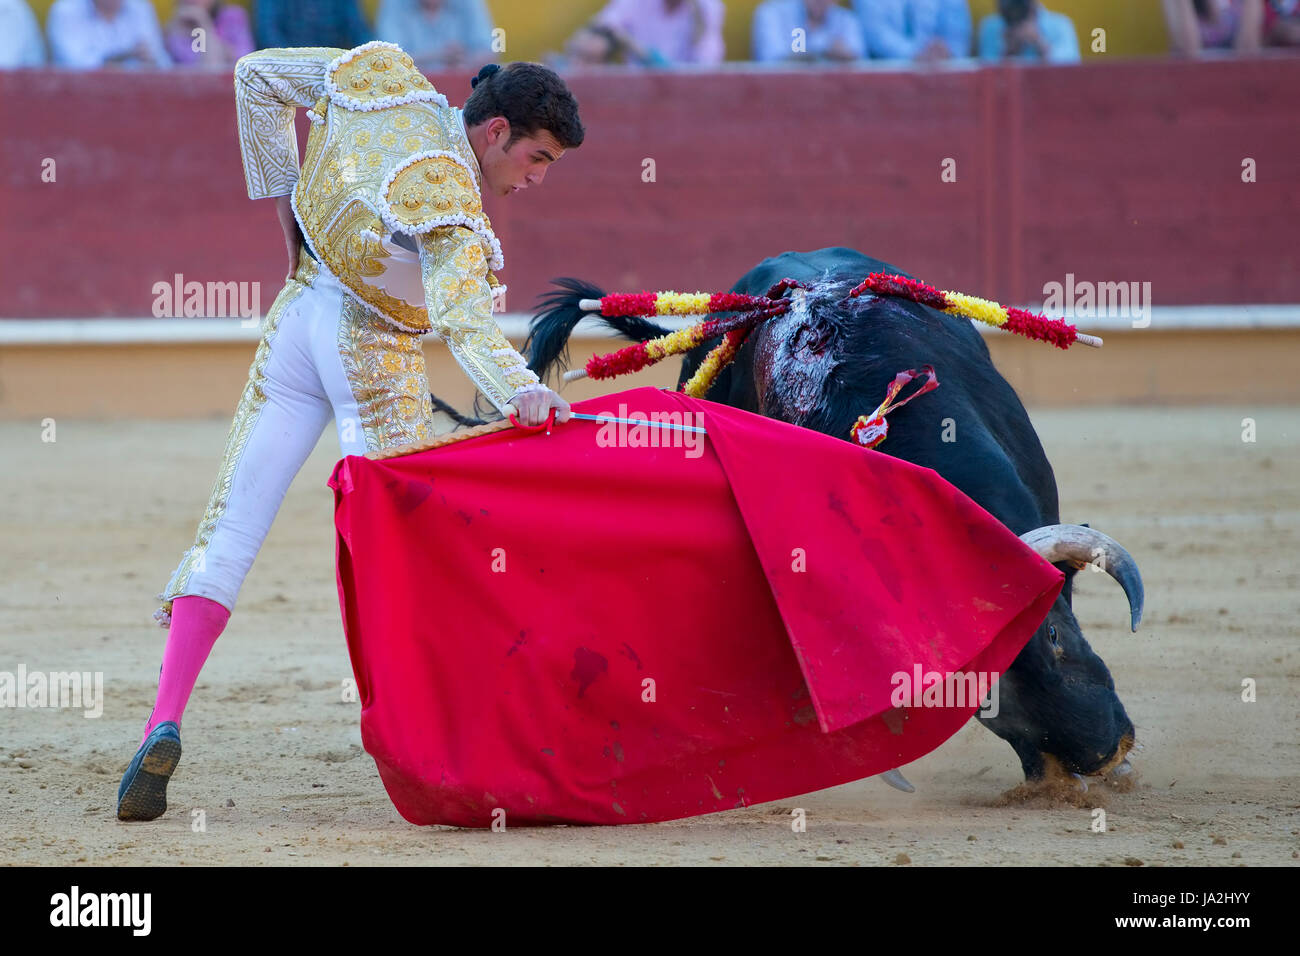 Un dettaglio di una corrida in Spagna Foto Stock